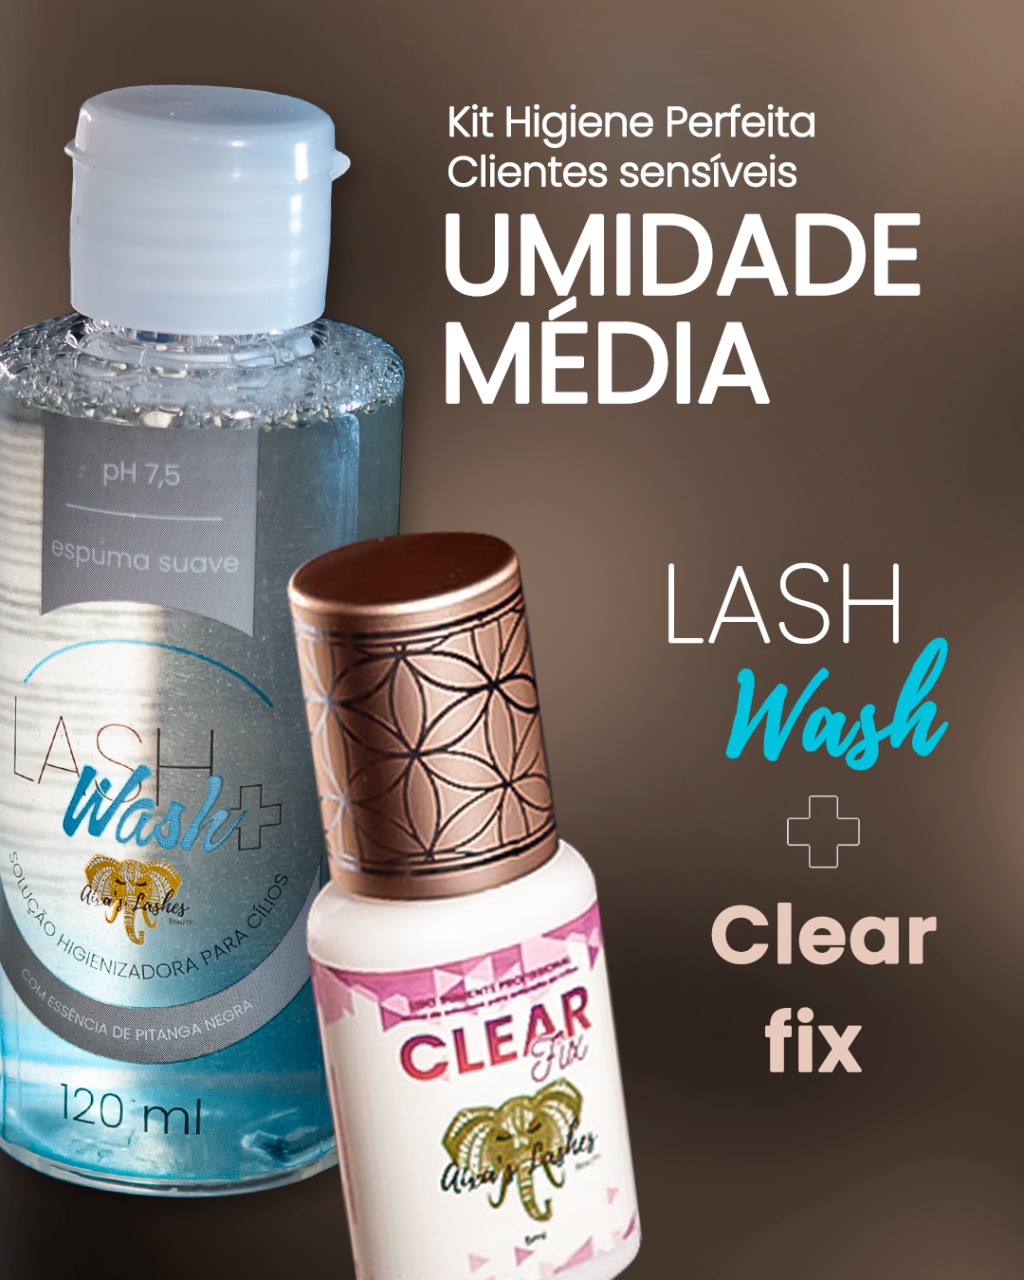 Kit Higiene Perfeita com Clear Fix (transparente) + Wash UMIDADE MÉDIA CLIENTES SENSÍVEIS